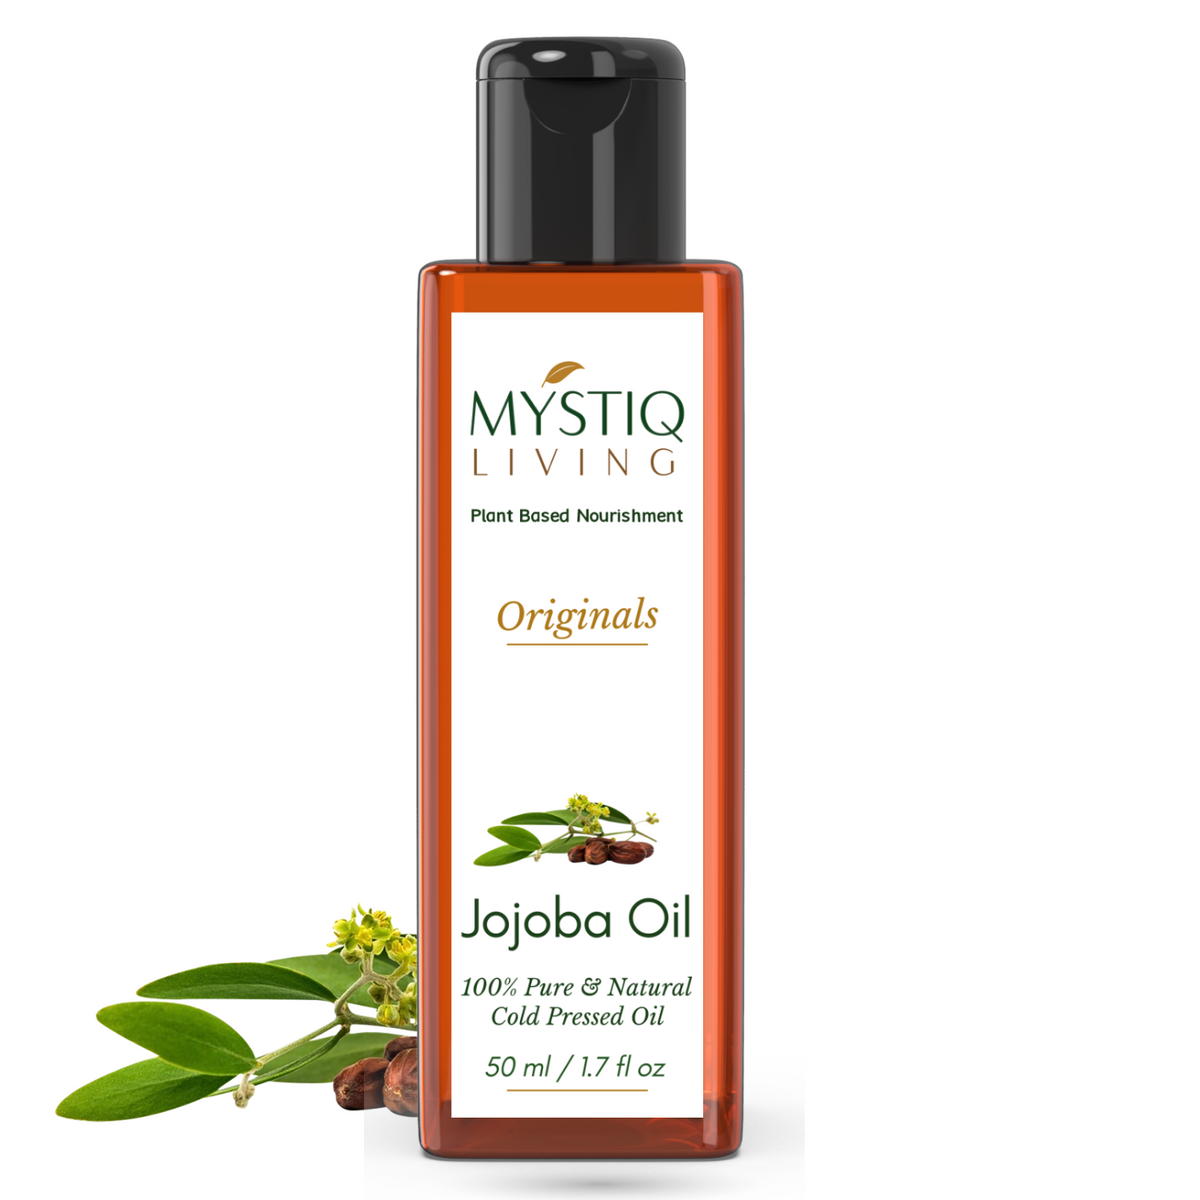 Mystiq Living Jojoba Oil | Cold Pressed Oil 